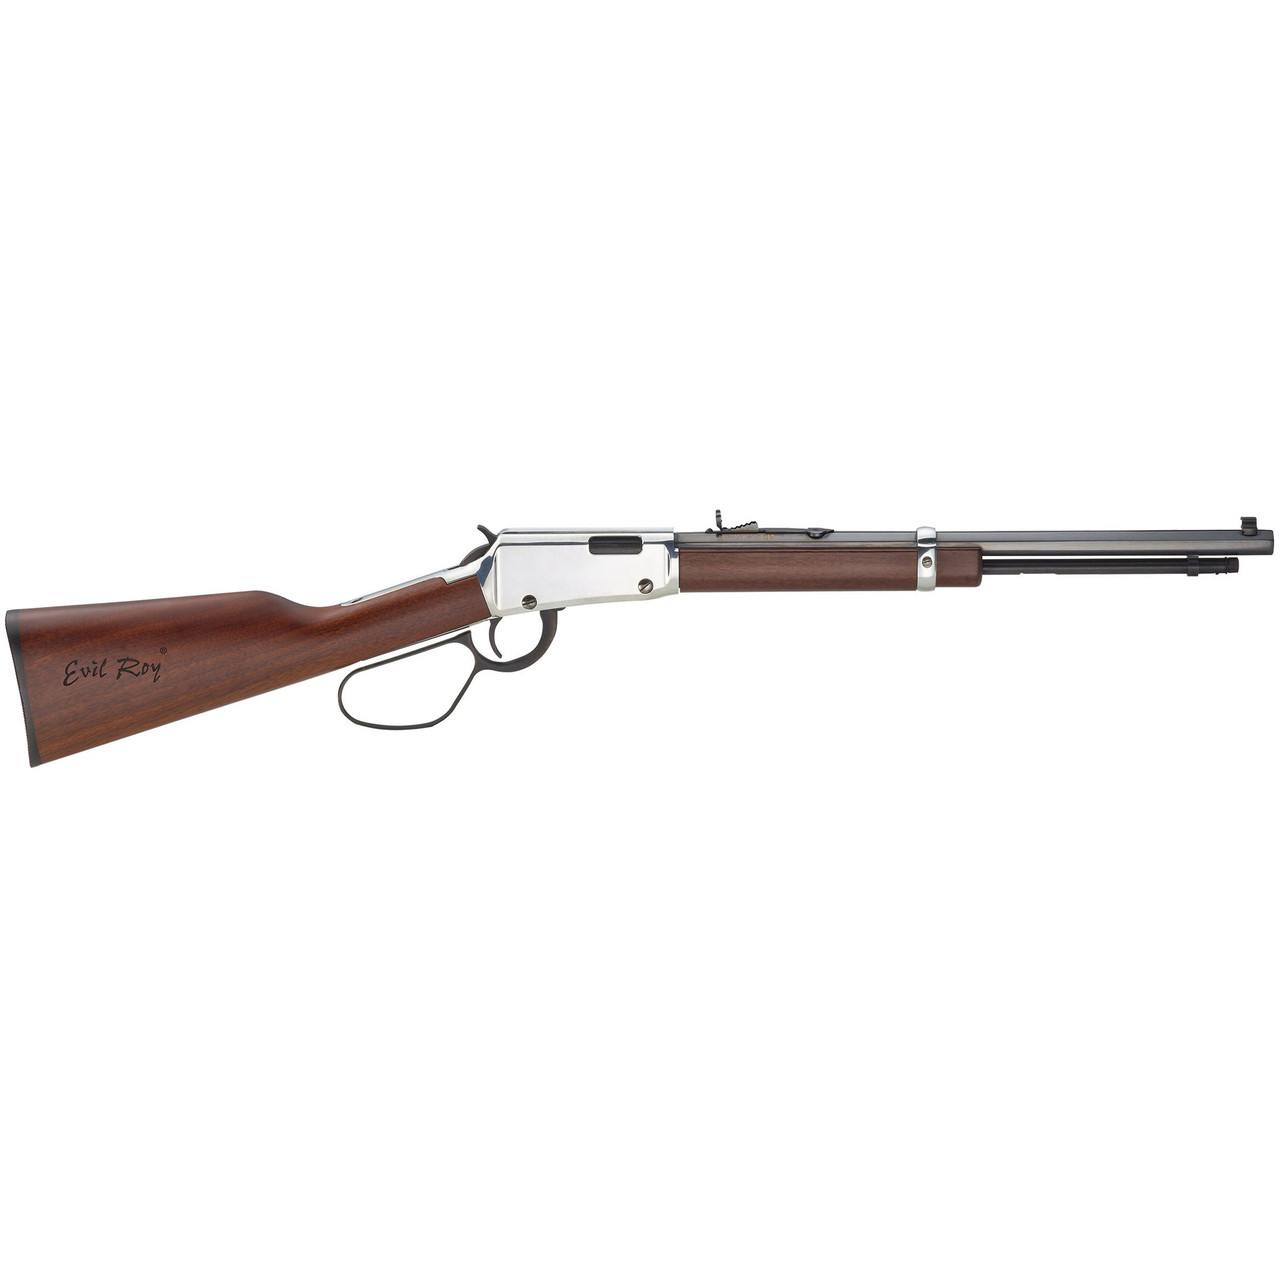 Henry Frontier Carbine "Evil Roy" CALIFORNIA LEGAL - .22 LR - Walnut/Nickel